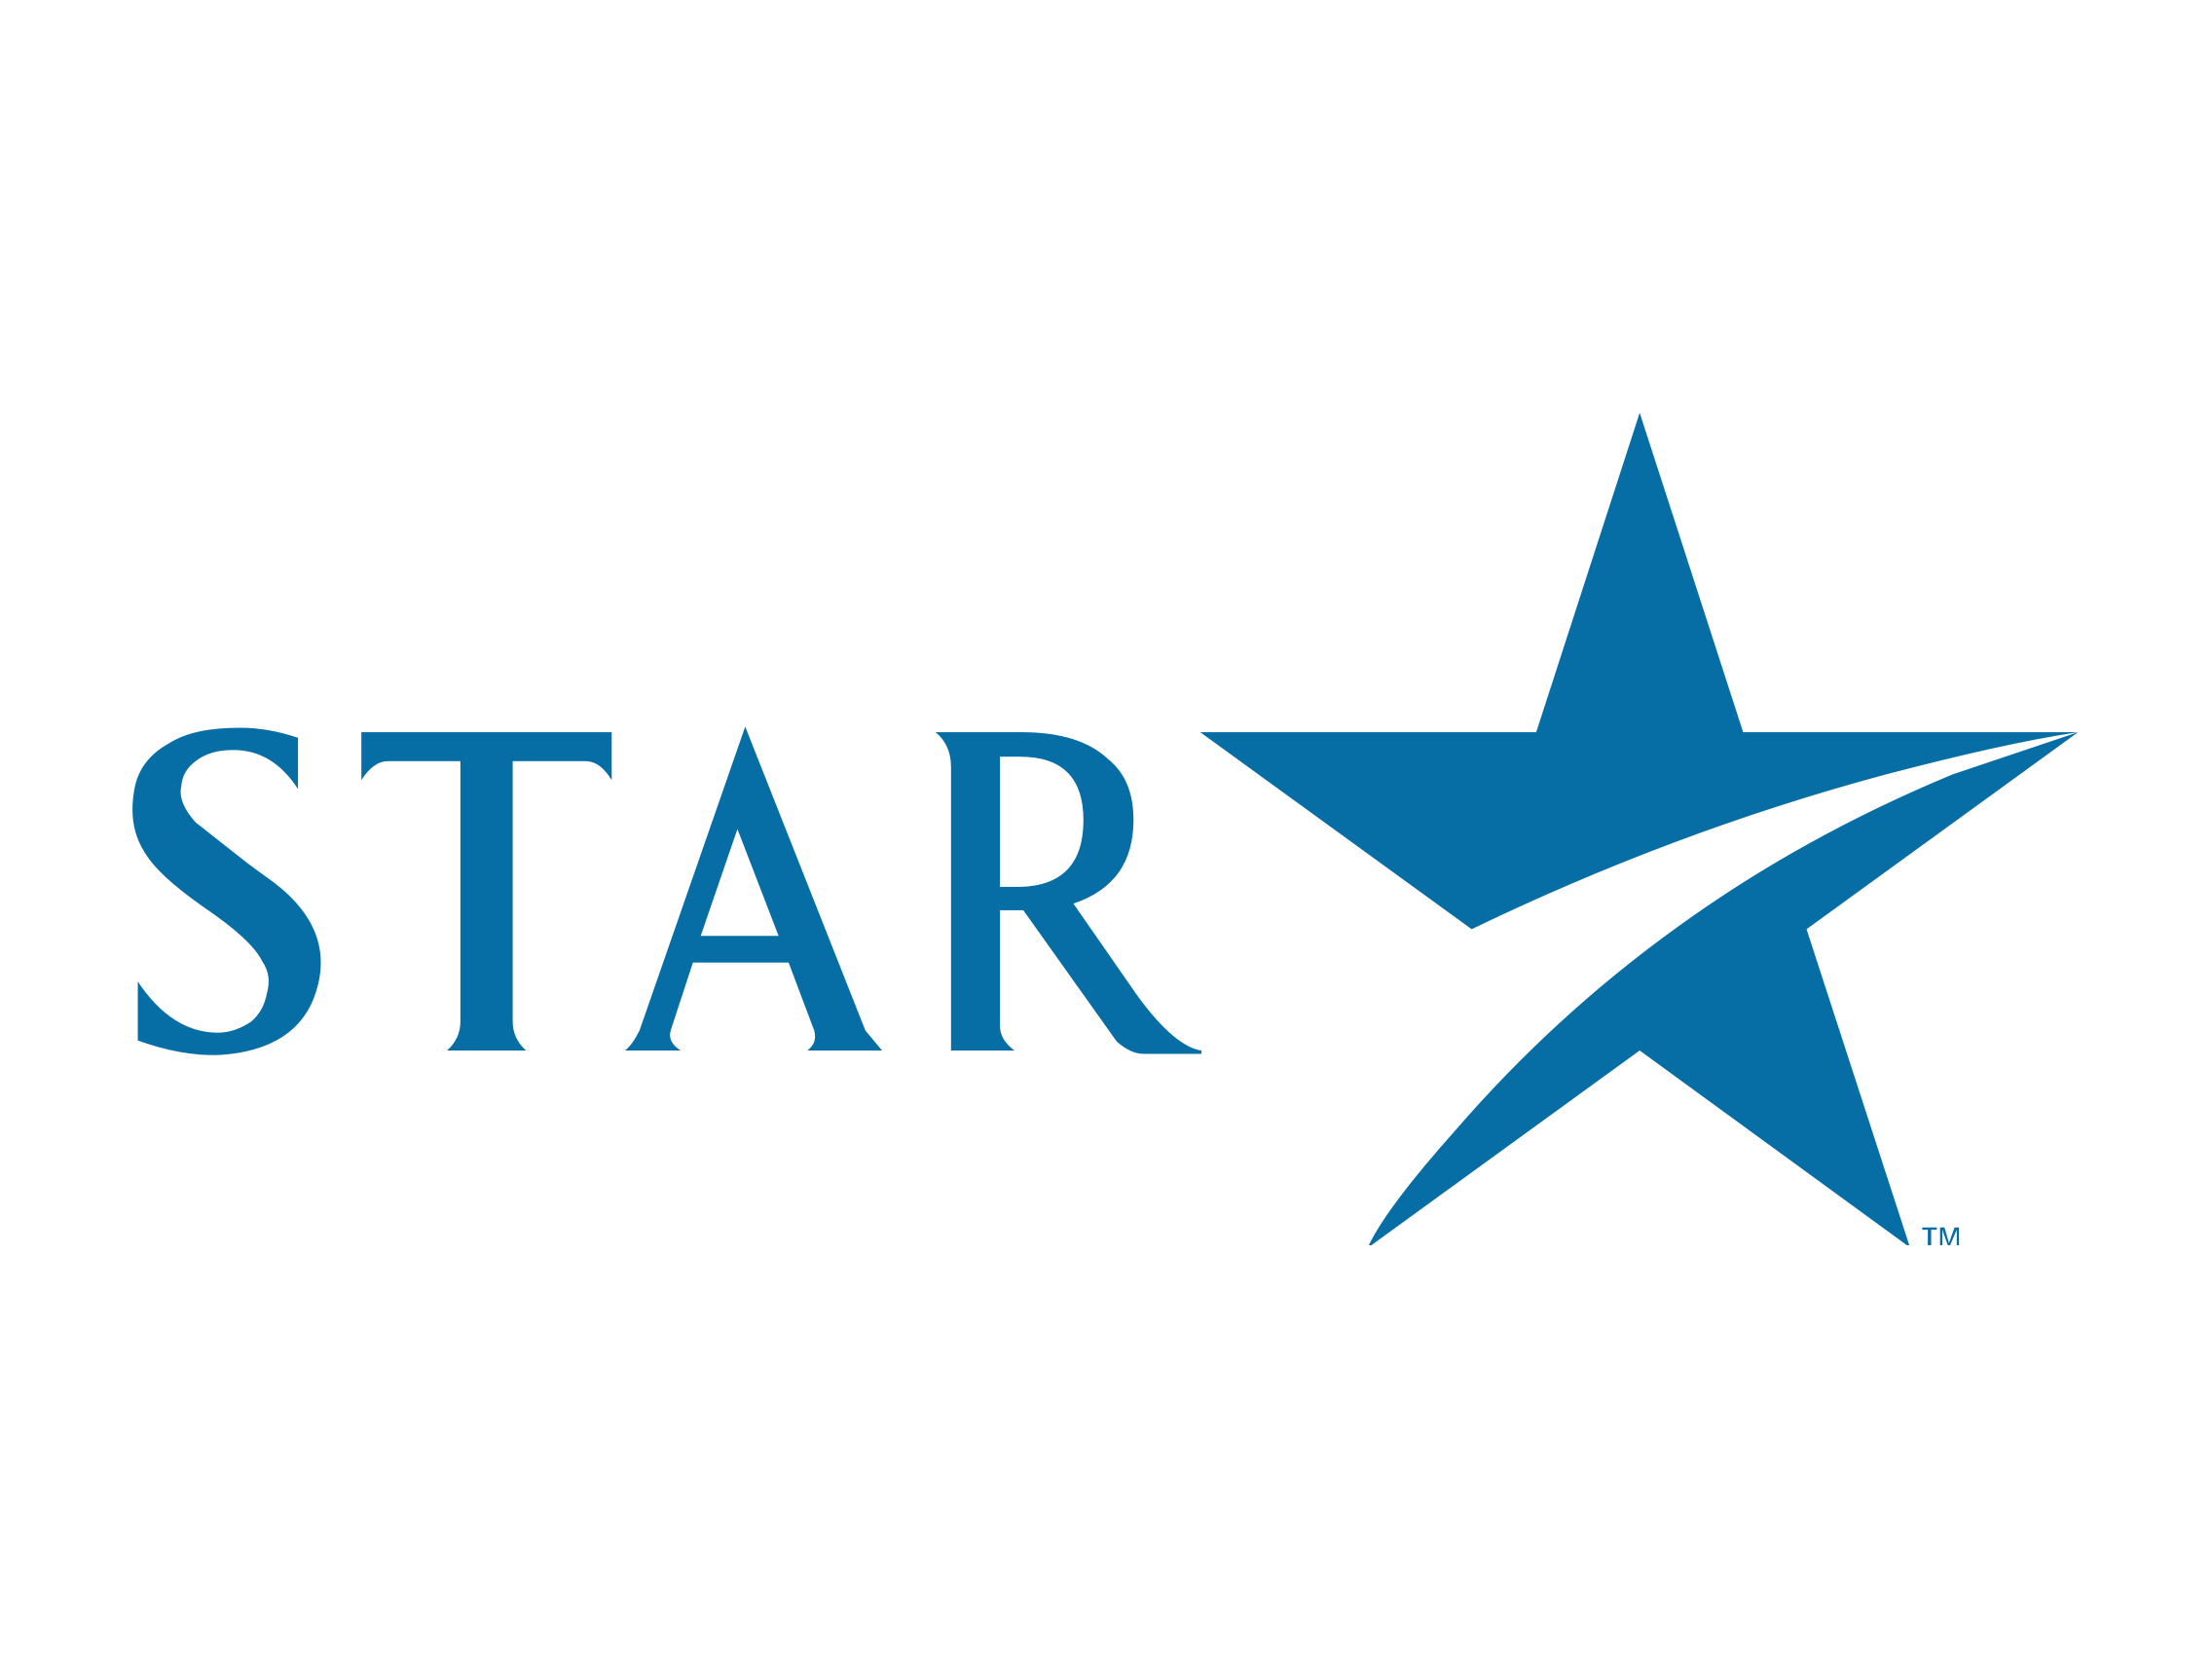 Old TV Logo - Star TV logo old